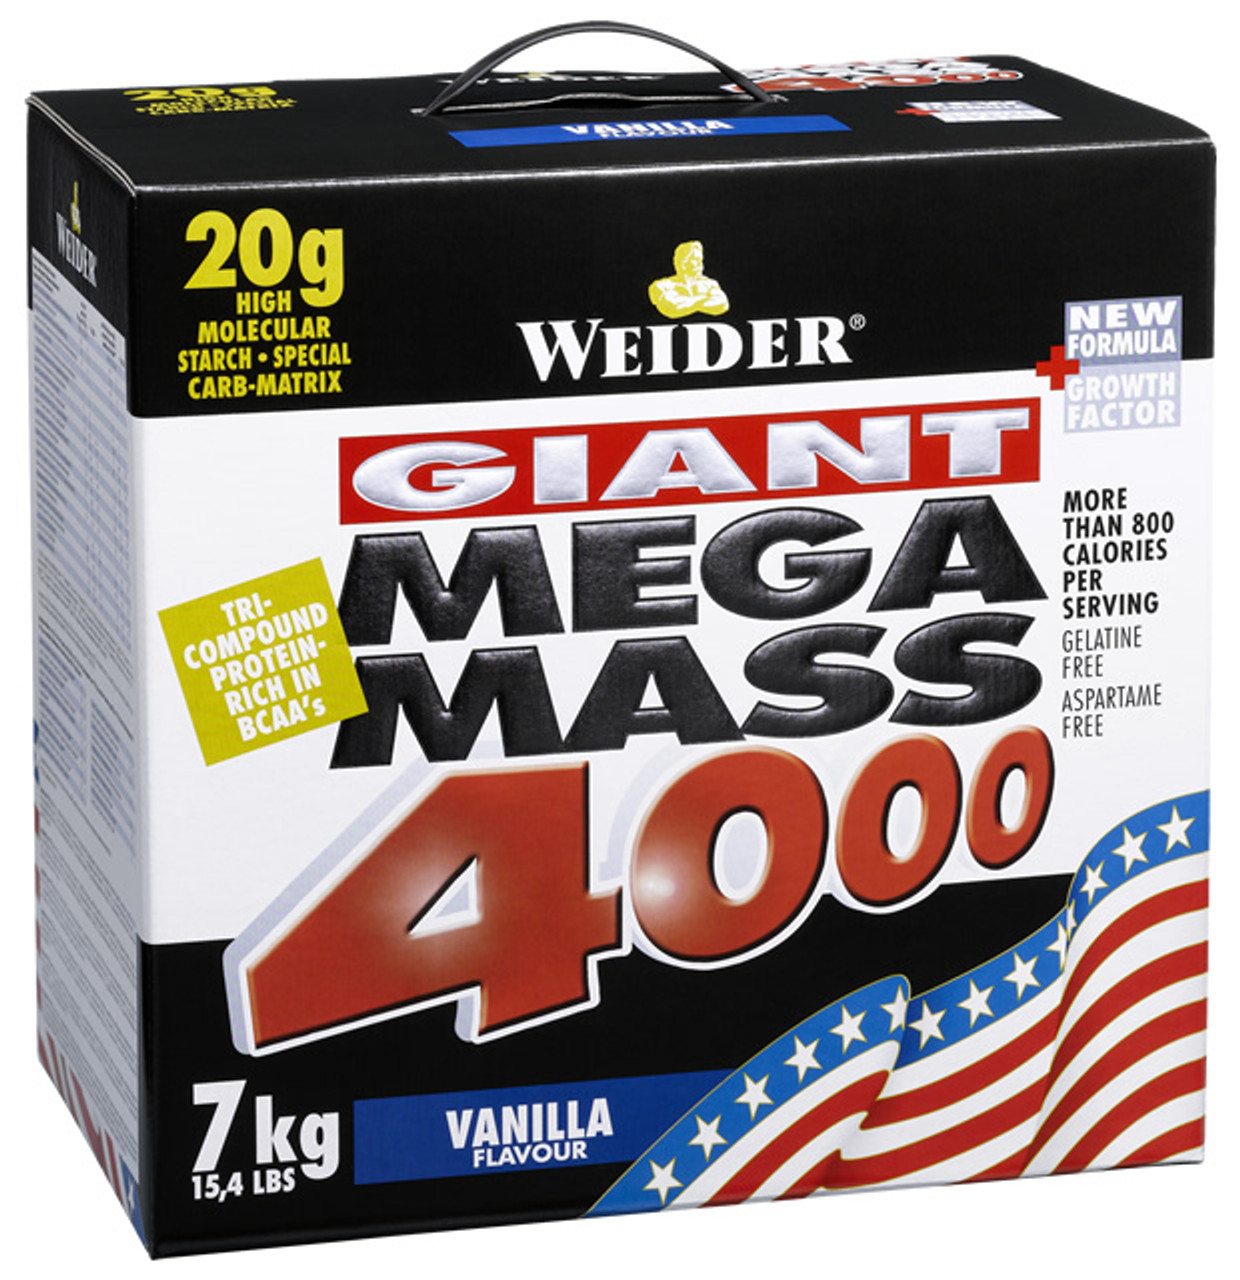 Weider - Mega Mass 4000, 7kg-Weider - Mega Mass 4000, 7kg